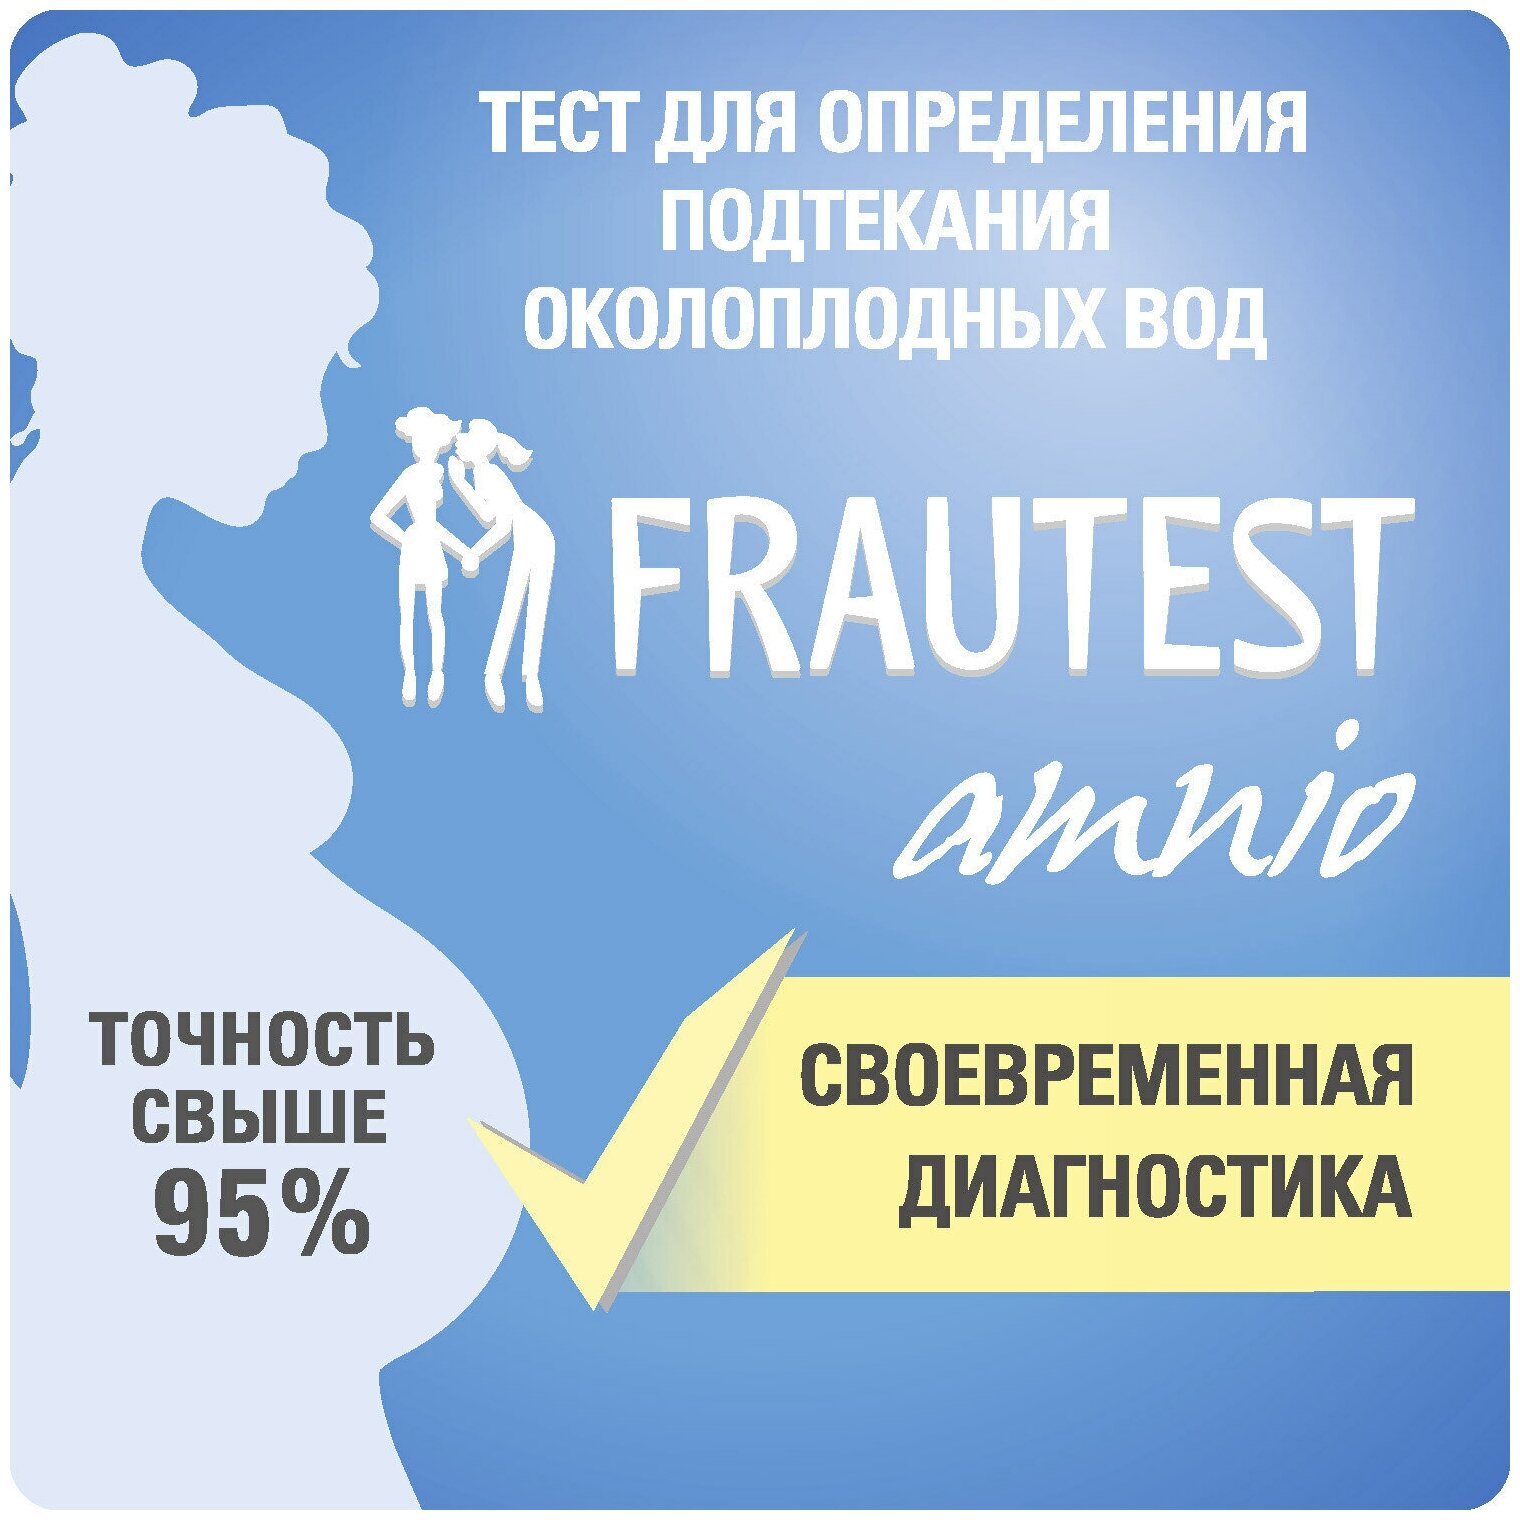 Тест на определение подтекания околоплодных вод Frautest Amnio, тест-прокладка, 1 шт